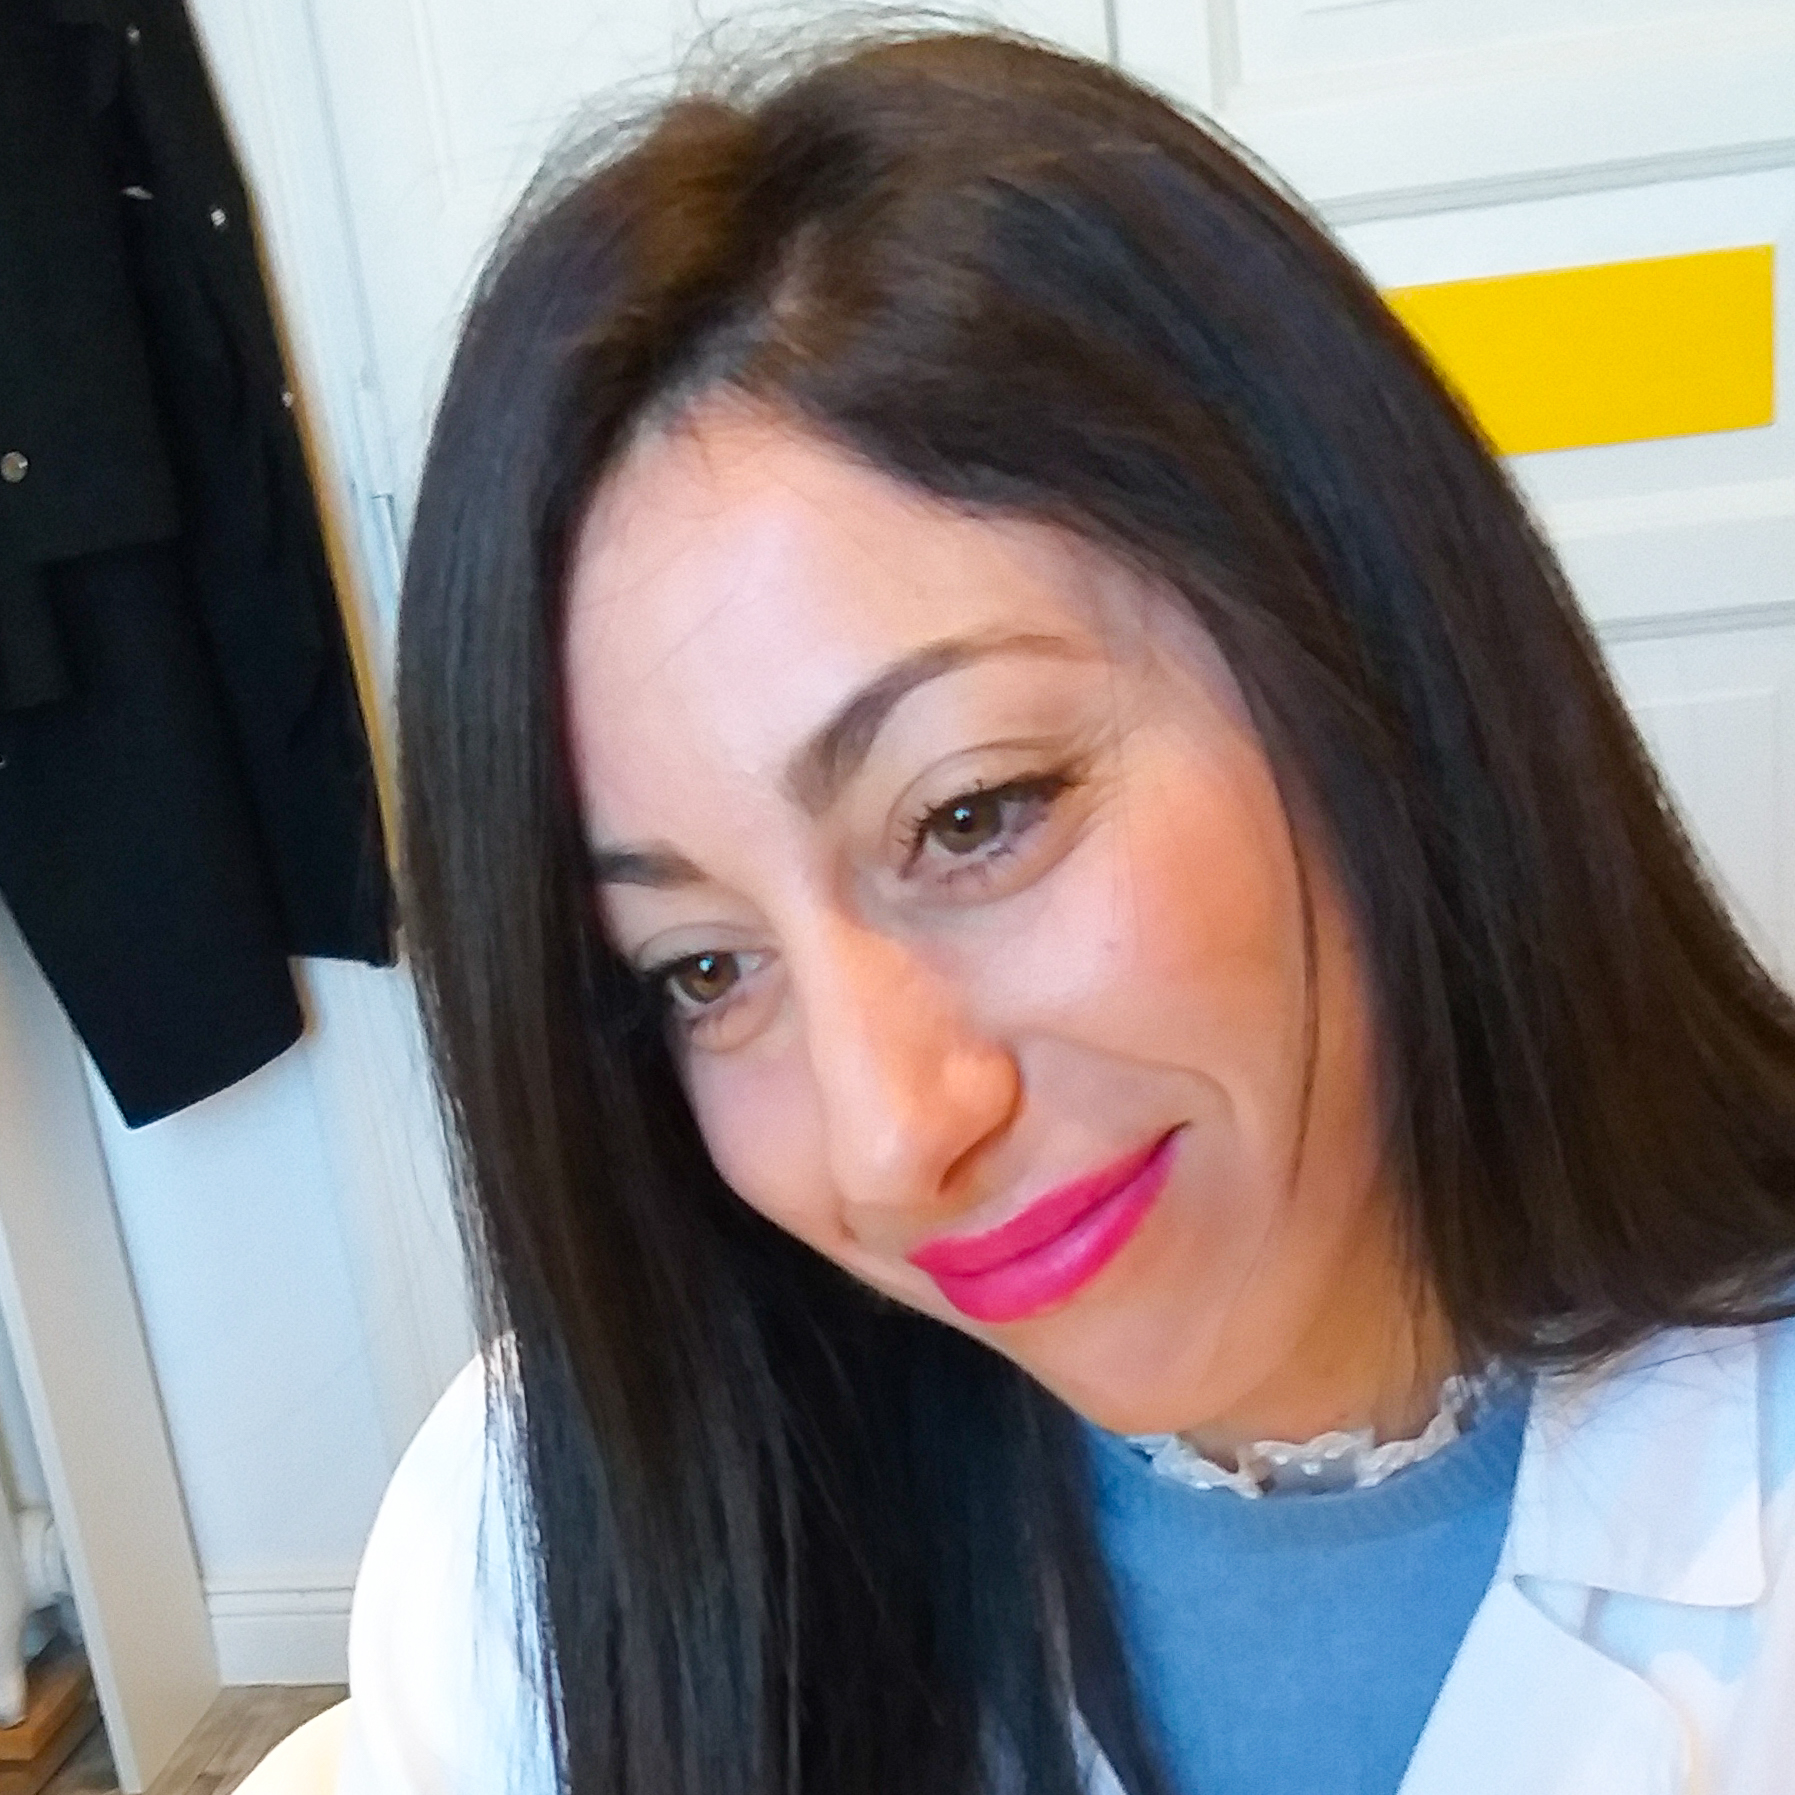 La Dottoressa Monica Salvi una delle professioniste in Dermatologia per le visite dermatologiche presso lo Studio Vircos